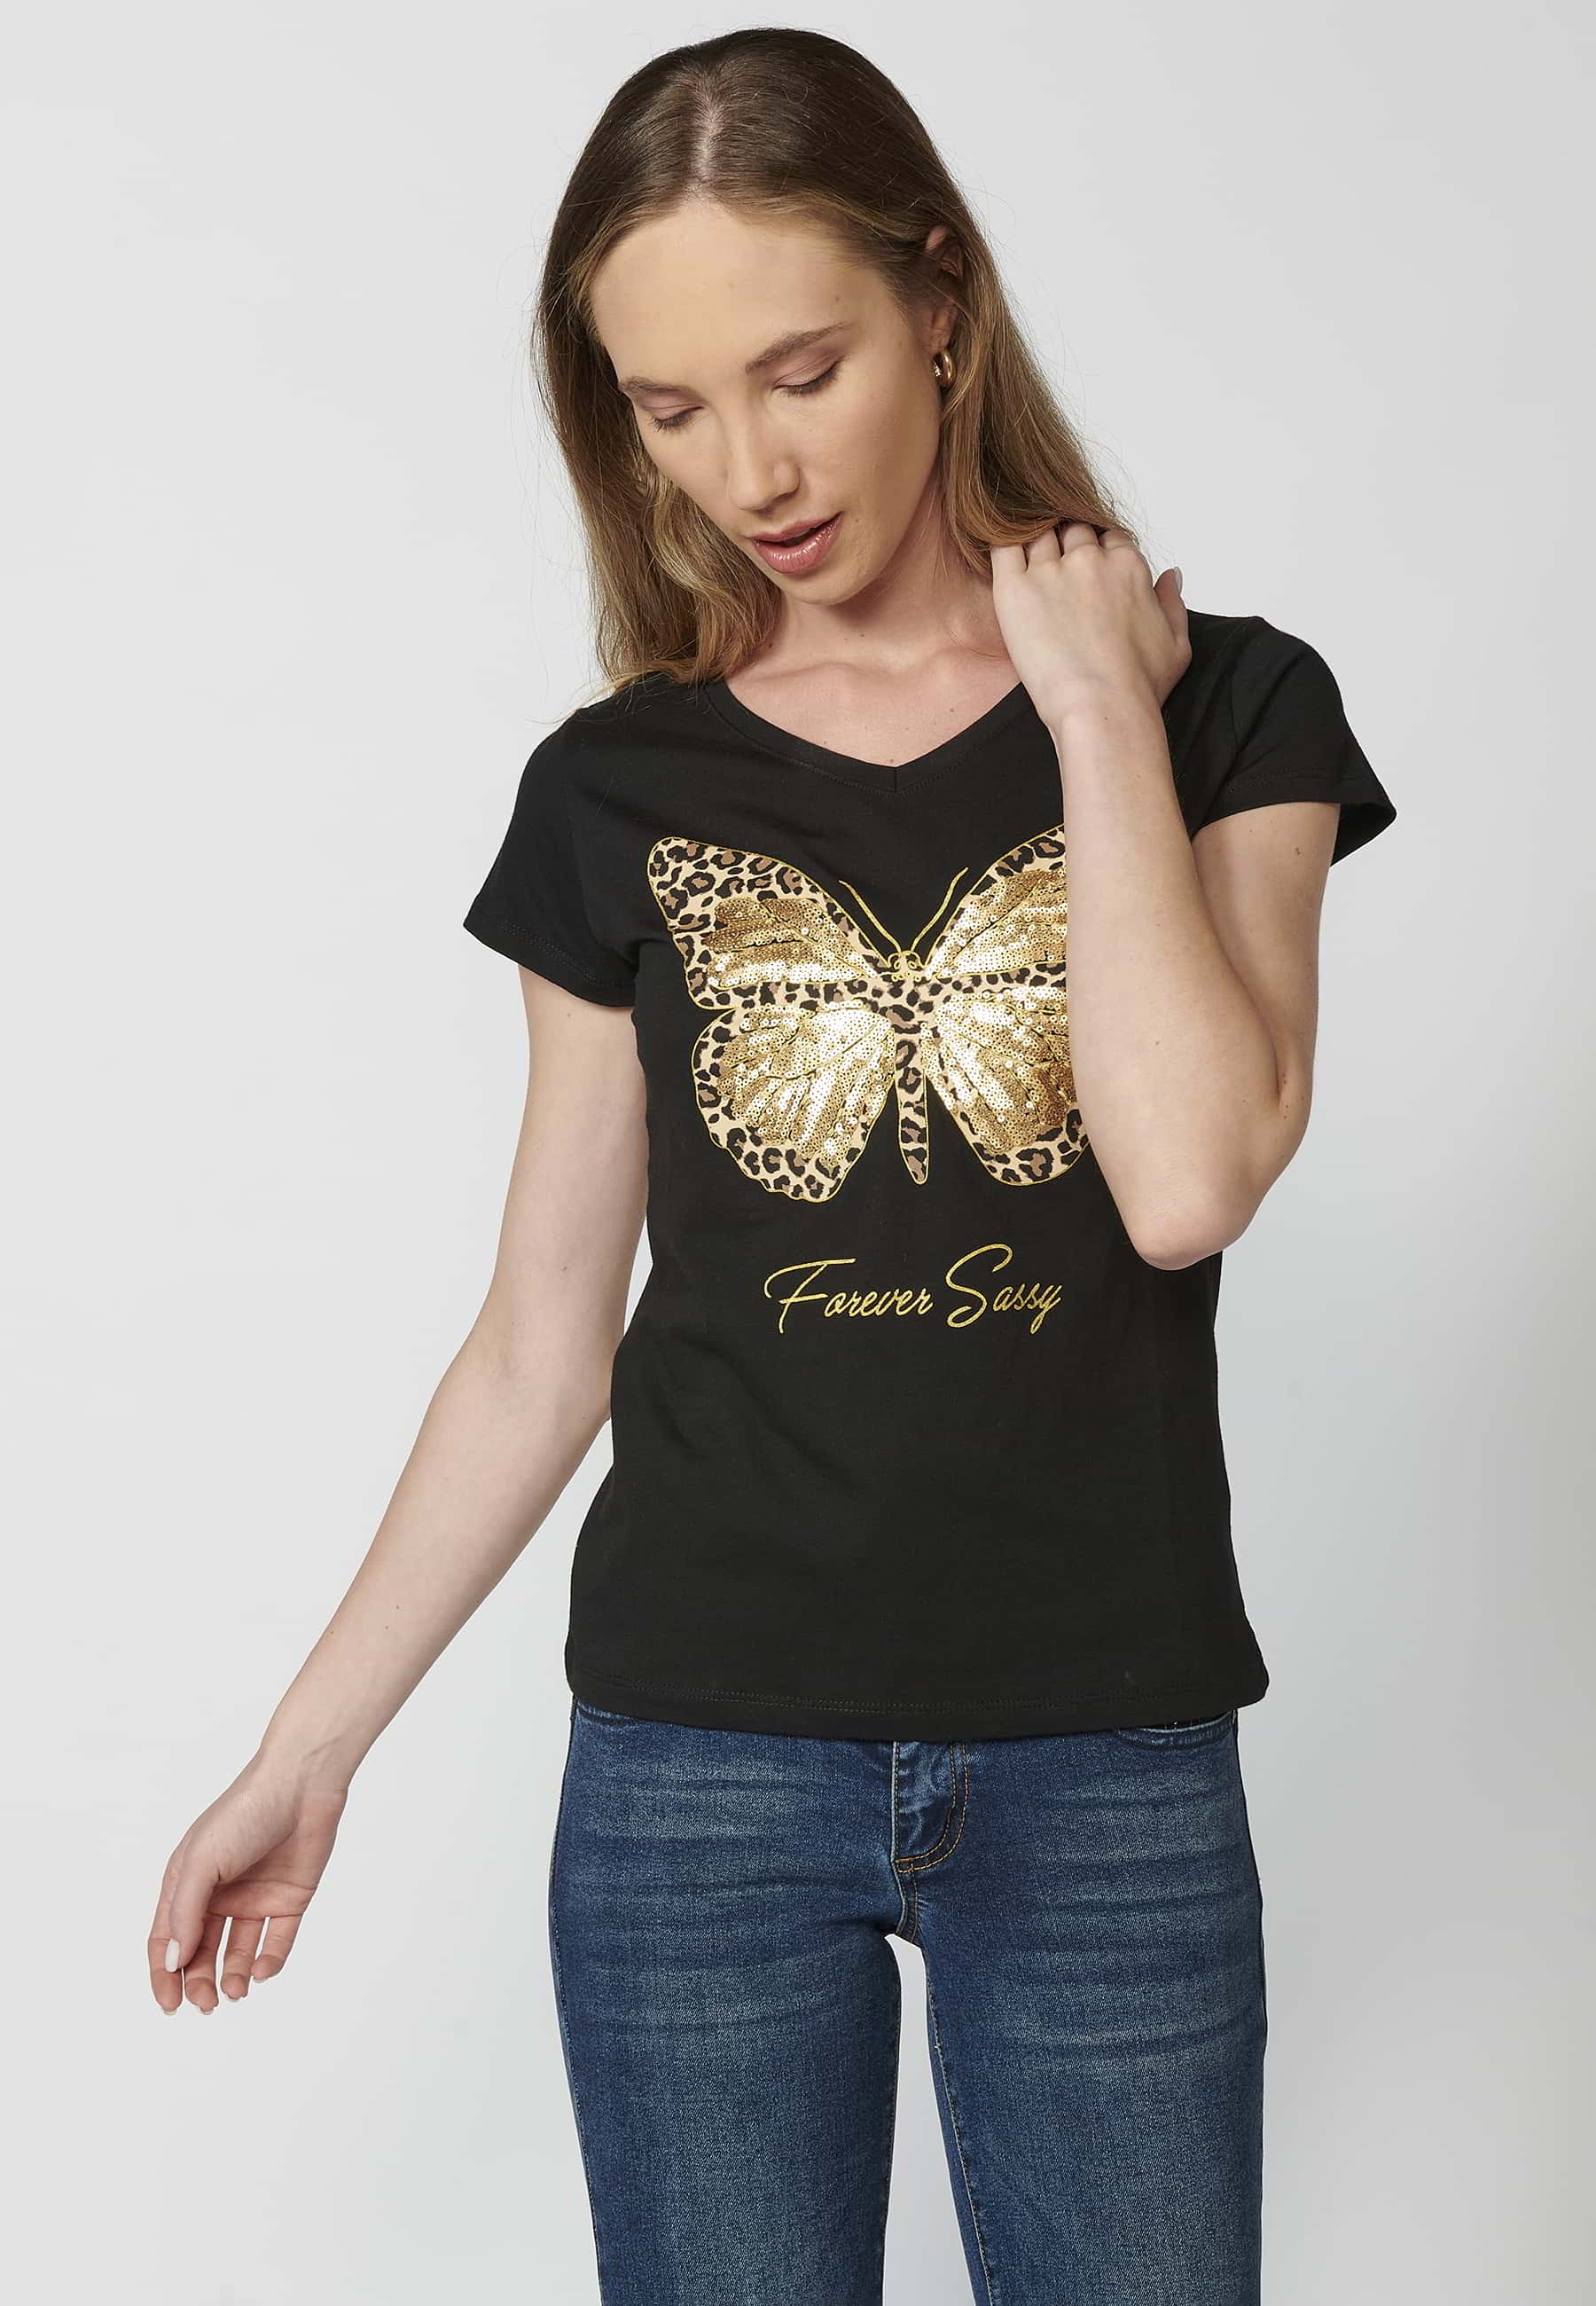 Camiseta de manga corta de algodón cuello redondo estampado frontal mariposa color negro para mujer